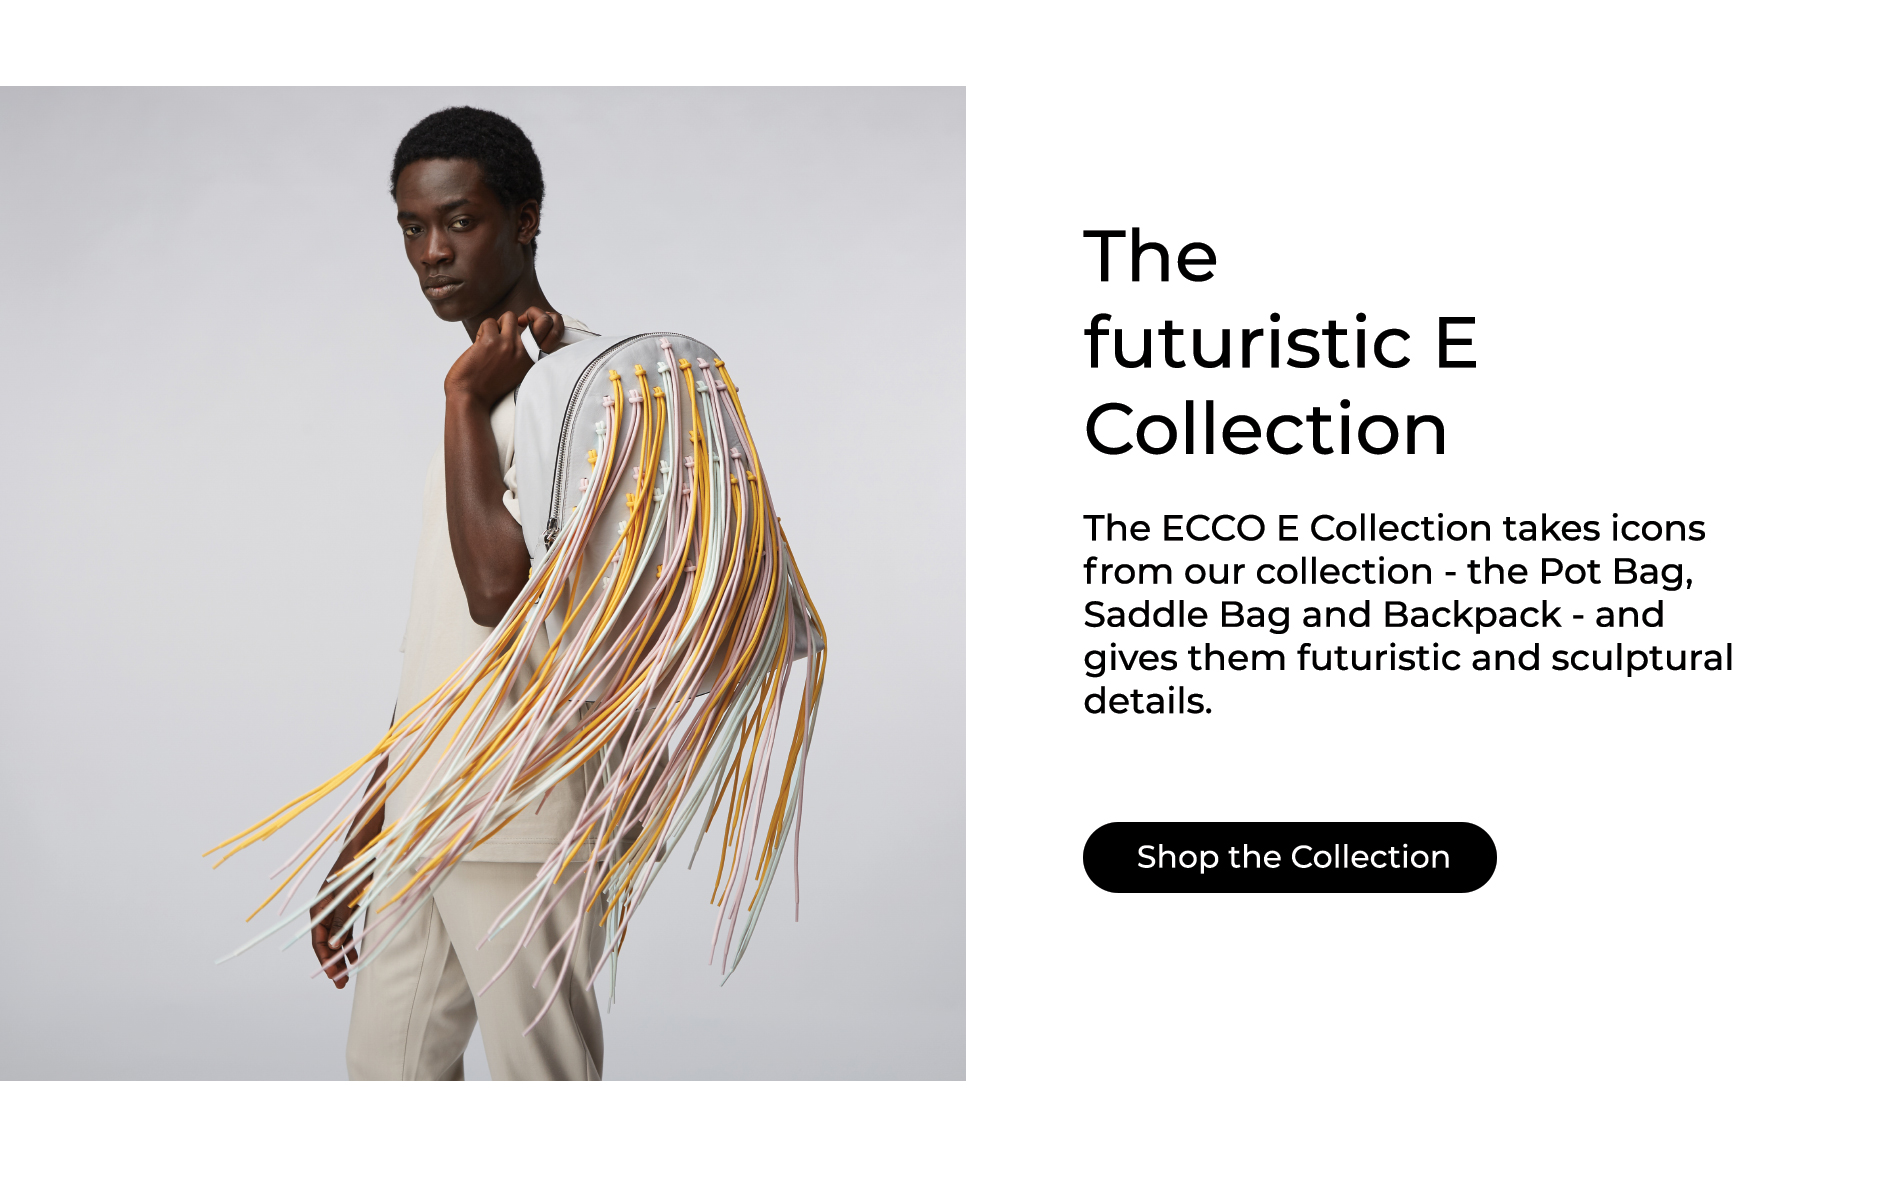 ECCO E Collection